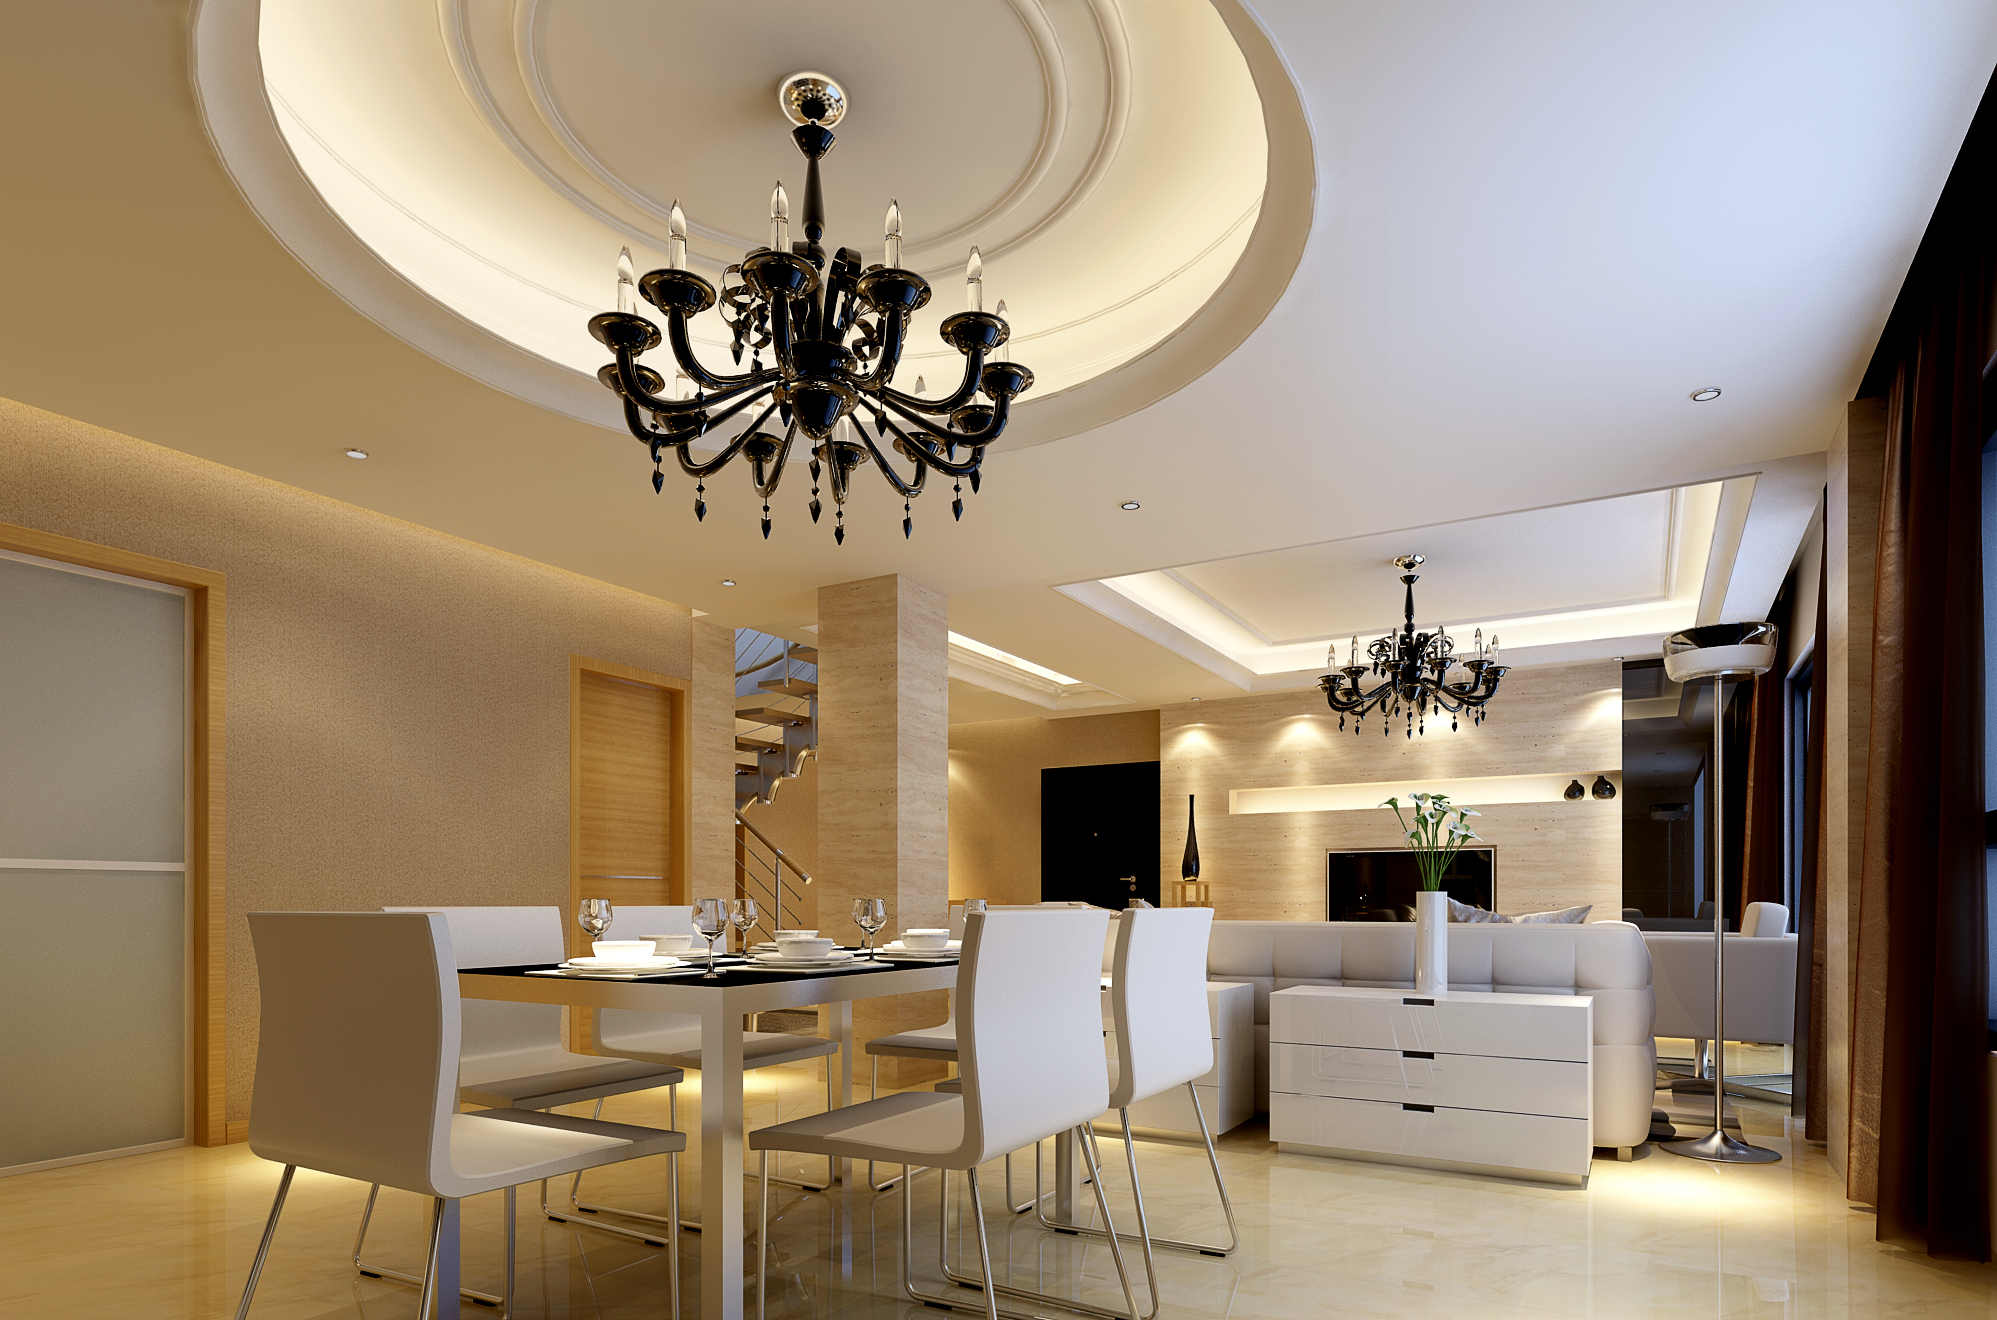 dining room ceiling trim ideas